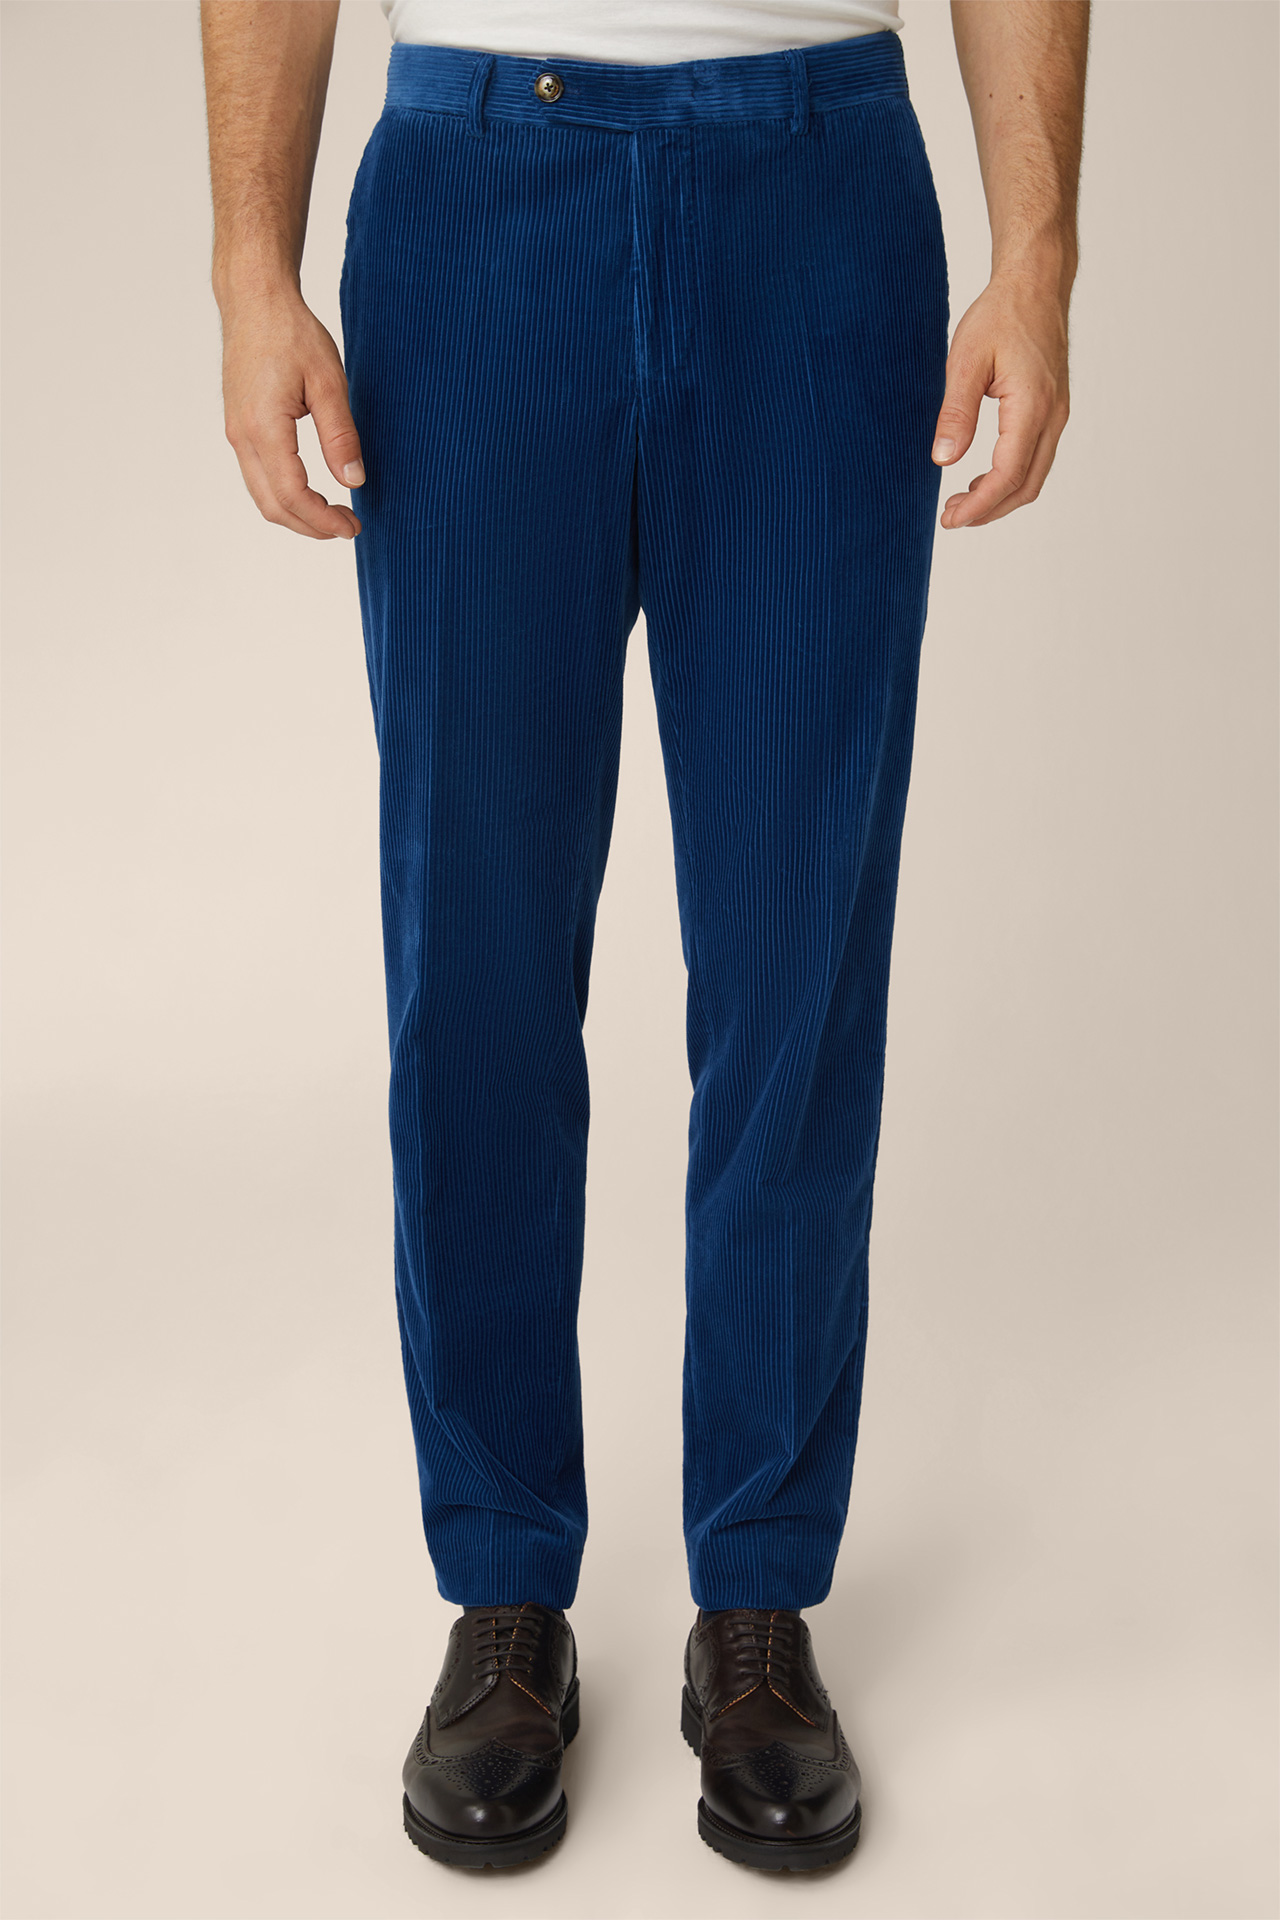 Pantalon modulable en velours côtelé Santios, en bleu royal